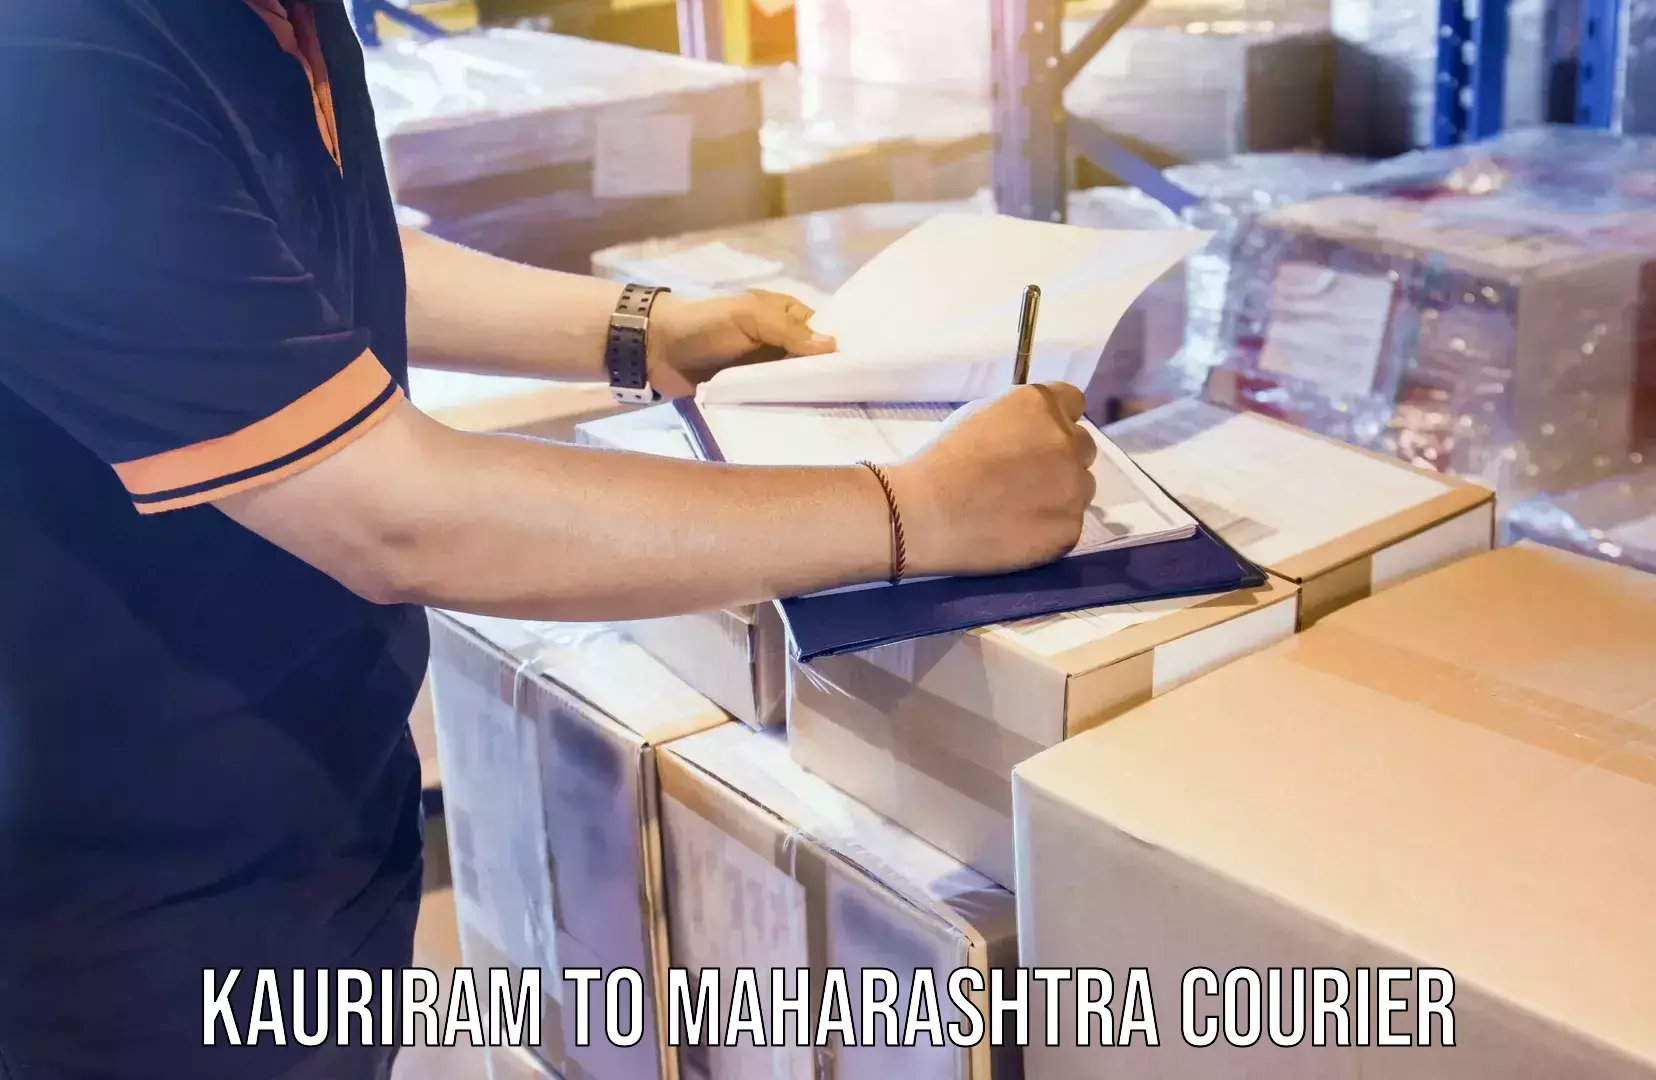 Specialized moving company in Kauriram to Maharashtra